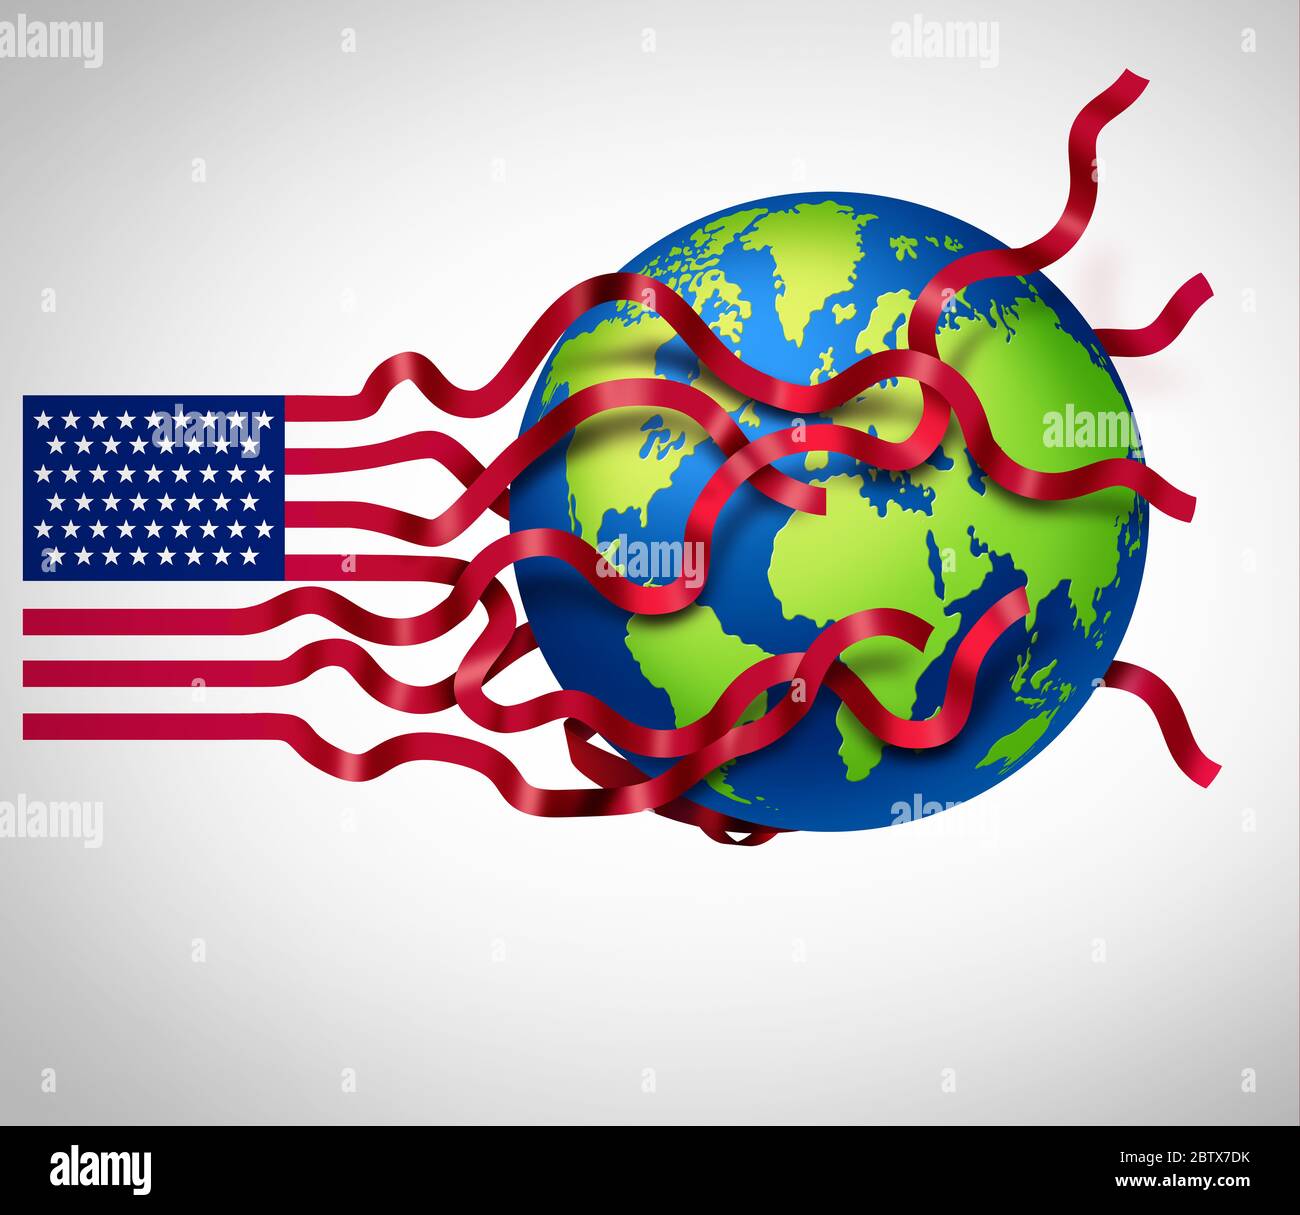 La estrategia global DE EE.UU. Y la planificación internacional de EE.UU. Como símbolo de los Estados Unidos que influye en el mundo con elementos de ilustración en 3D. Foto de stock